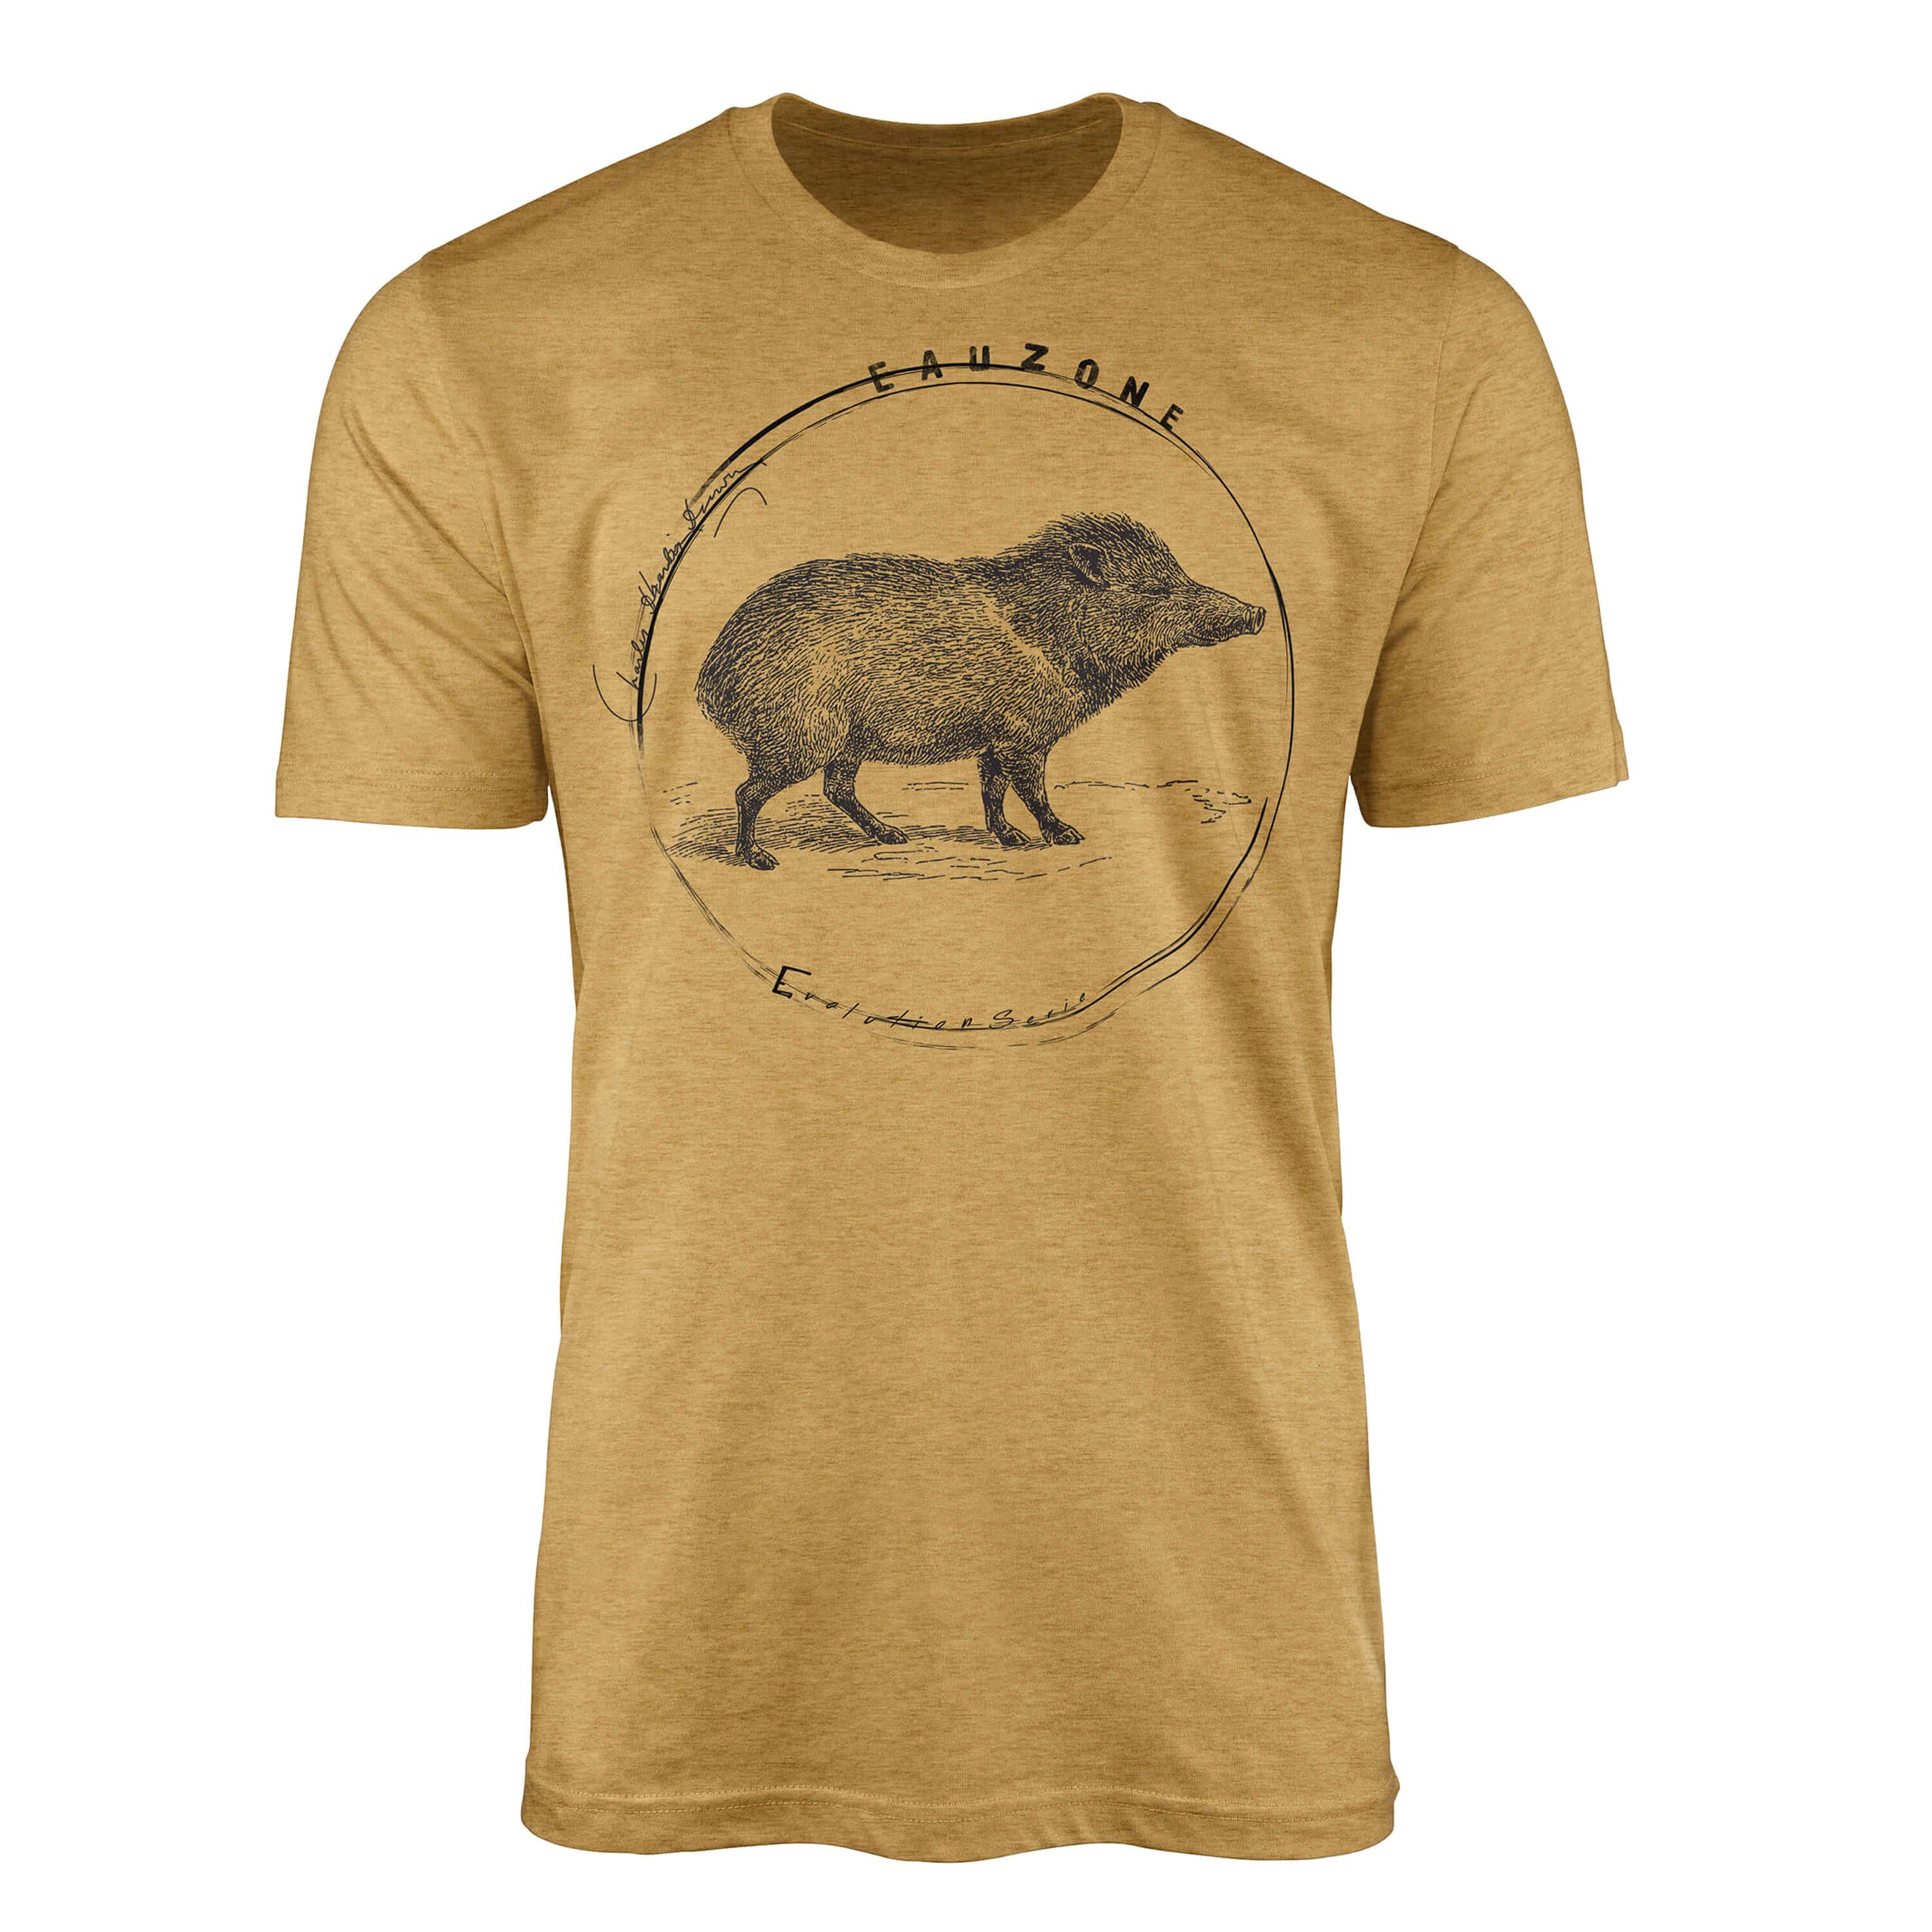 Echtes Produkt für ein beruhigendes Gefühl Sinus Art T-Shirt Herren Wildschwein Antique Gold T-Shirt Evolution